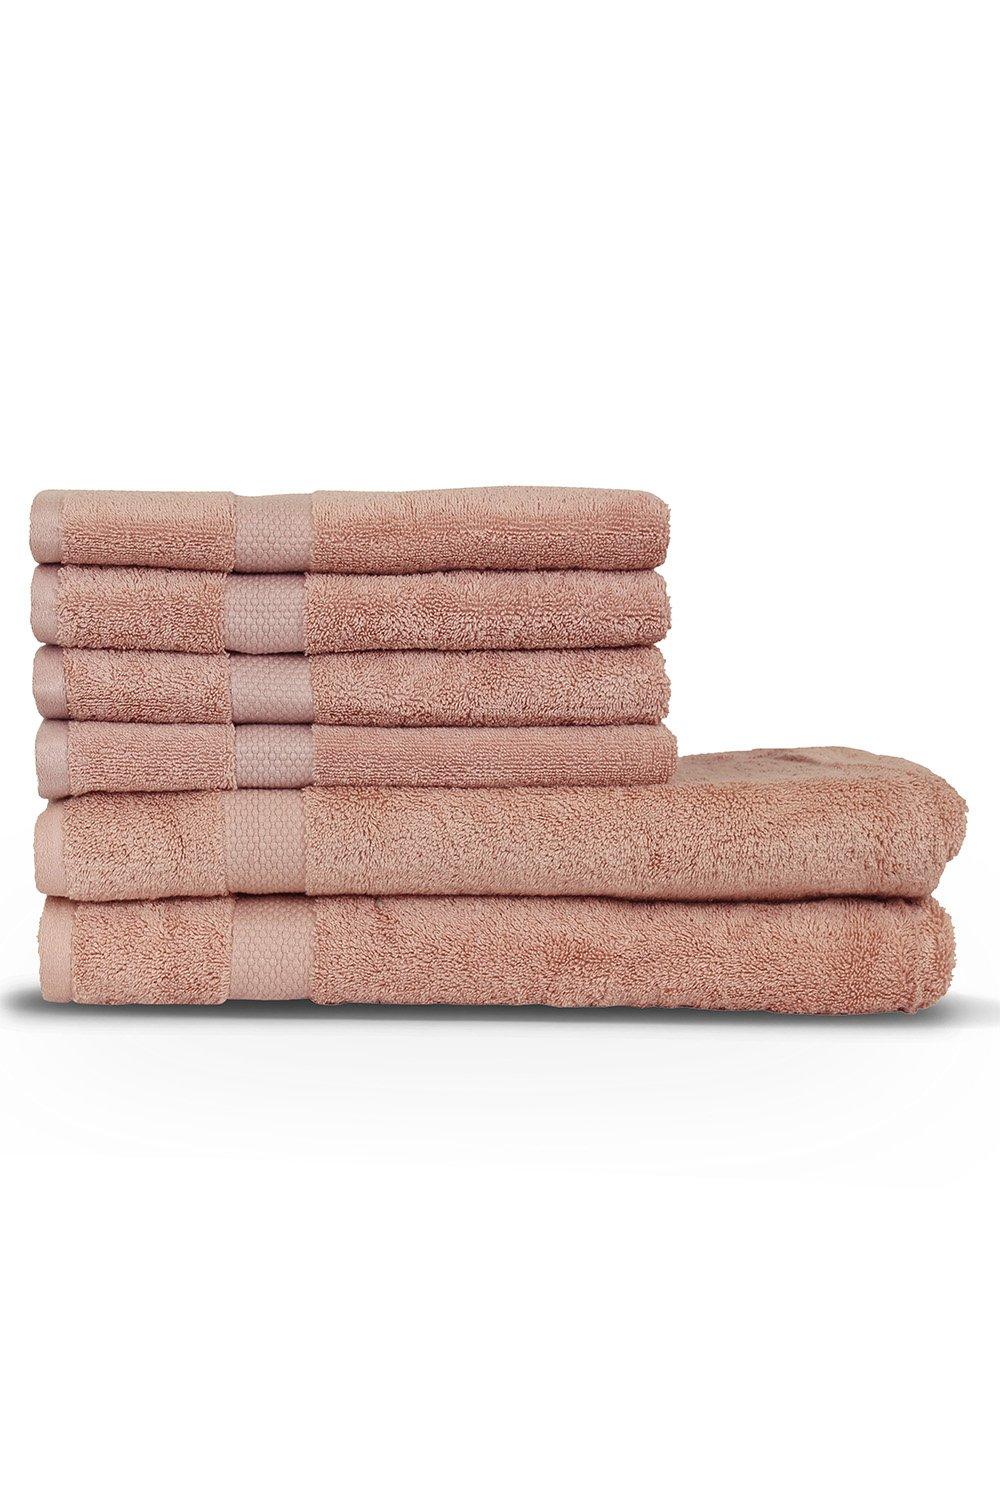 Loft Combed Cotton 6-Piece Hand/Bath Towel Bale